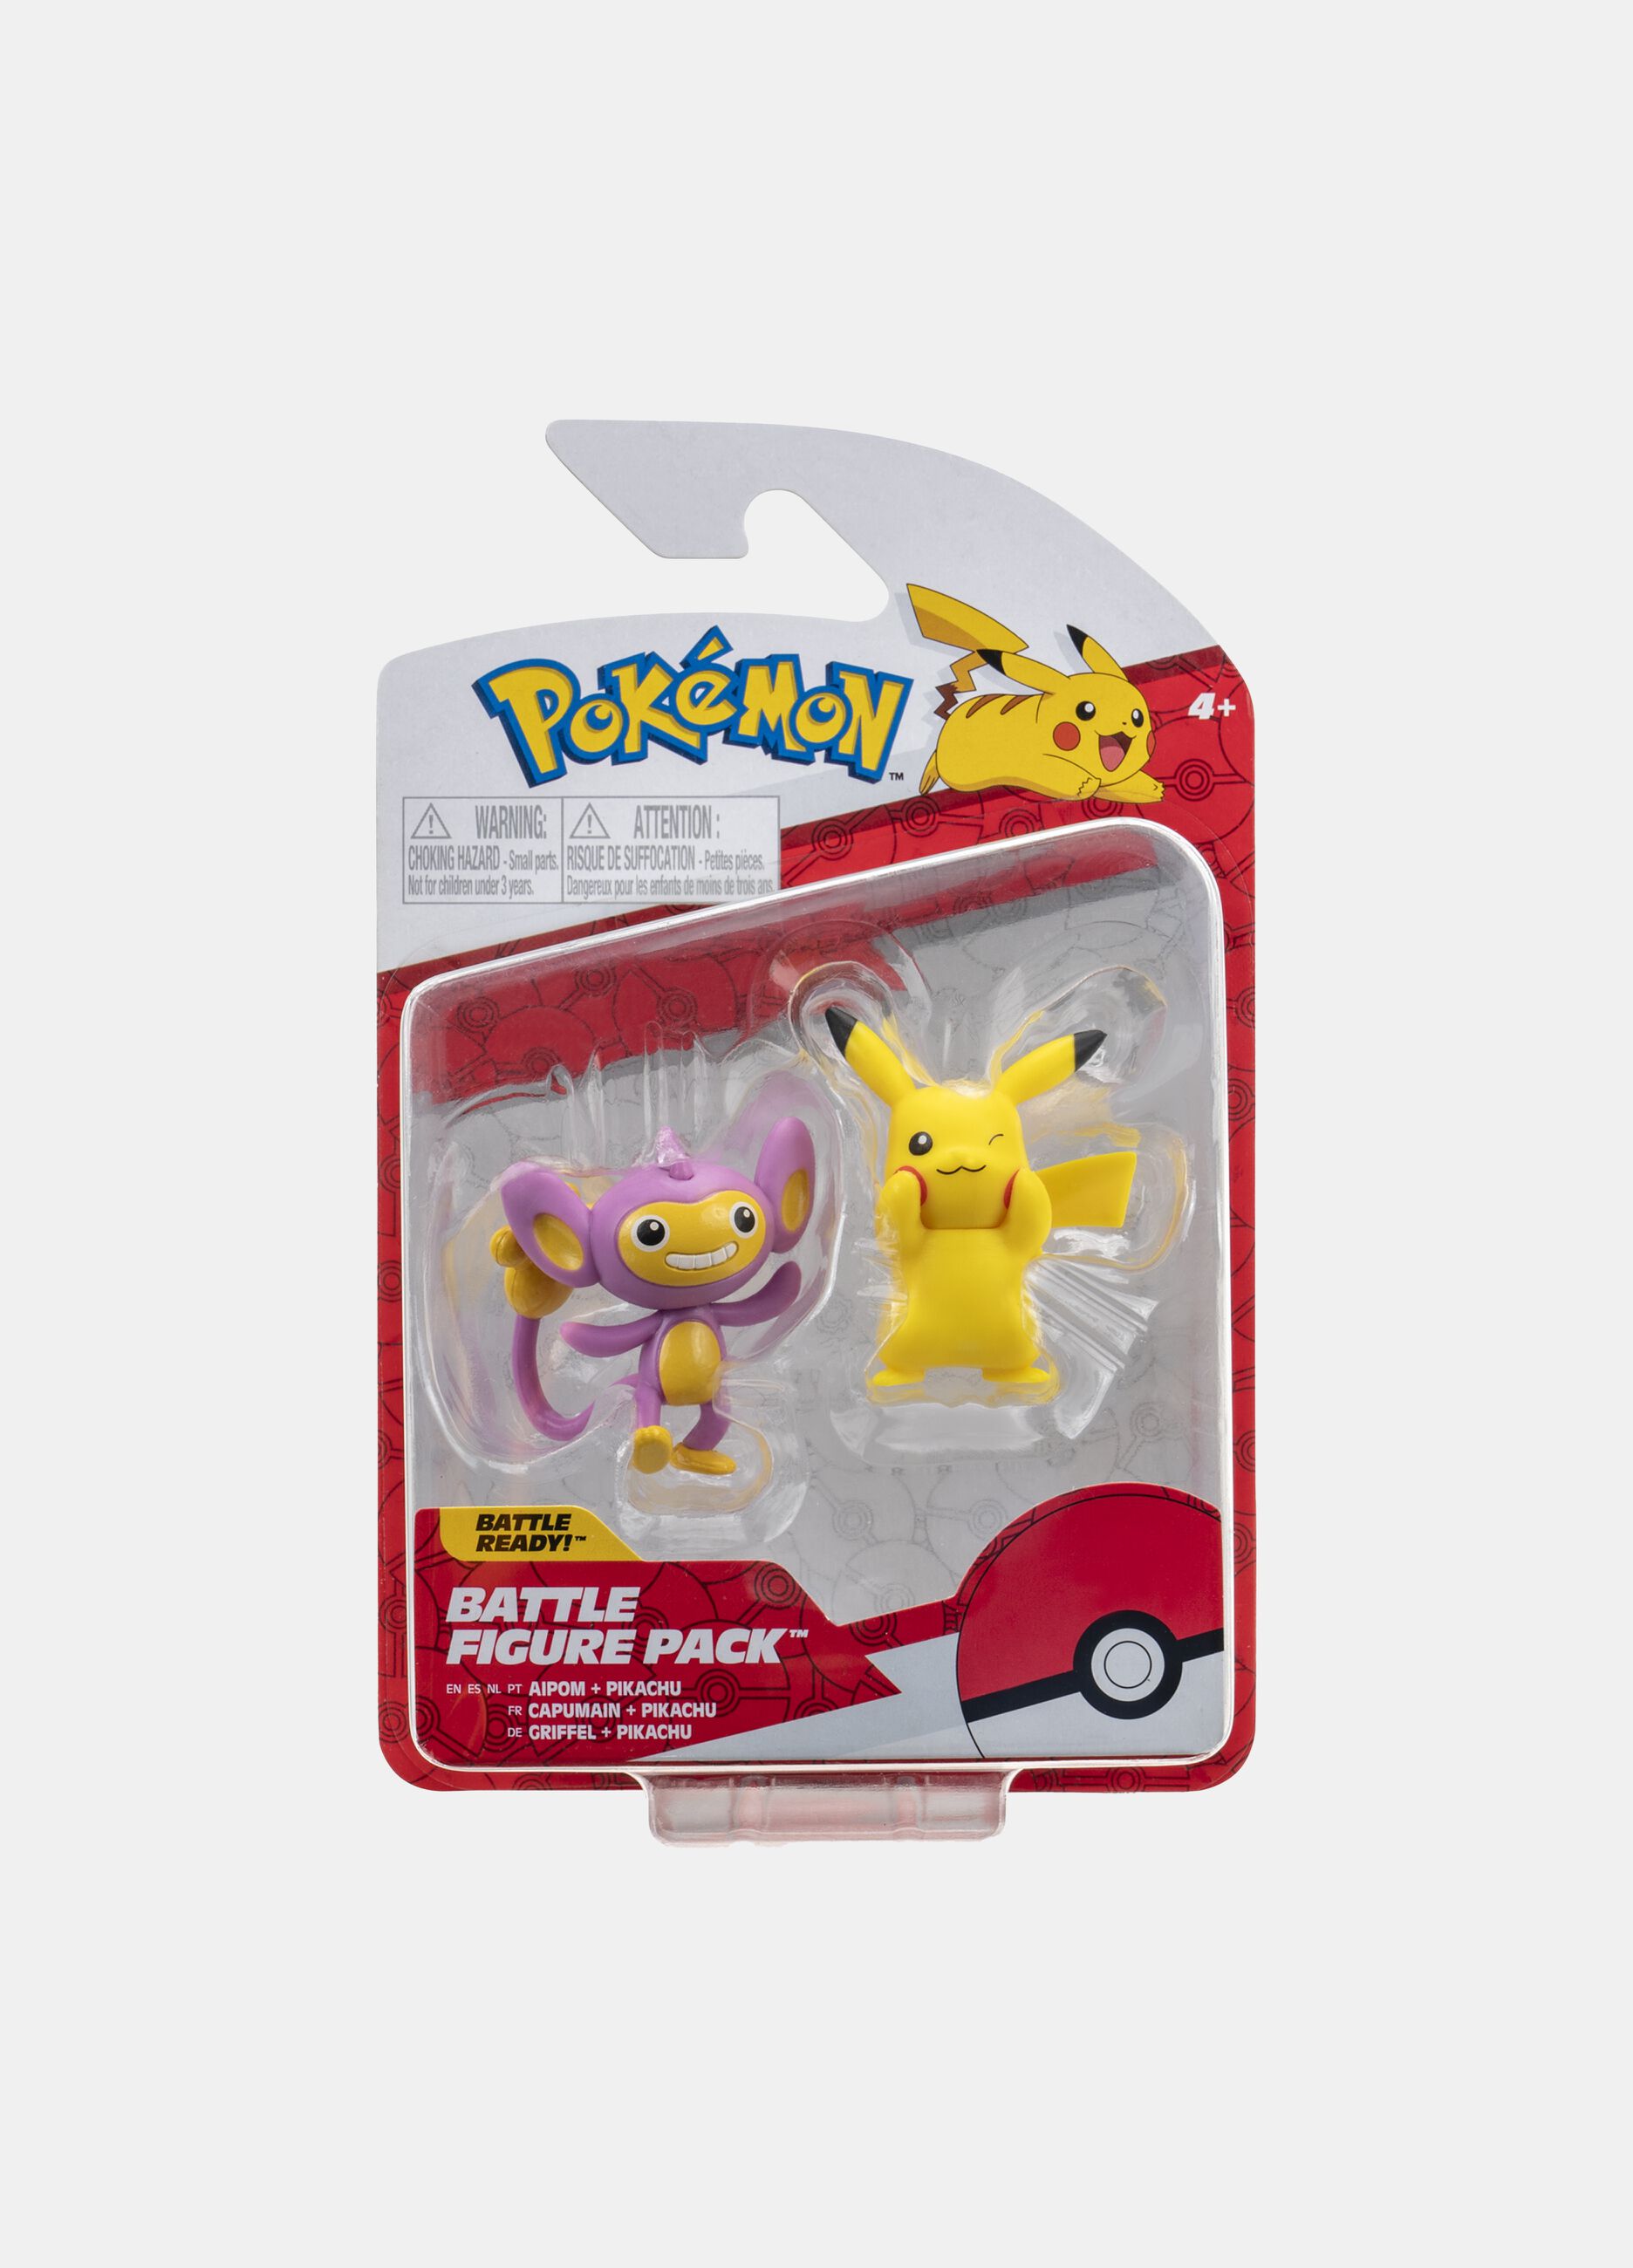 Pokémon Pikachu and Aipom battle set